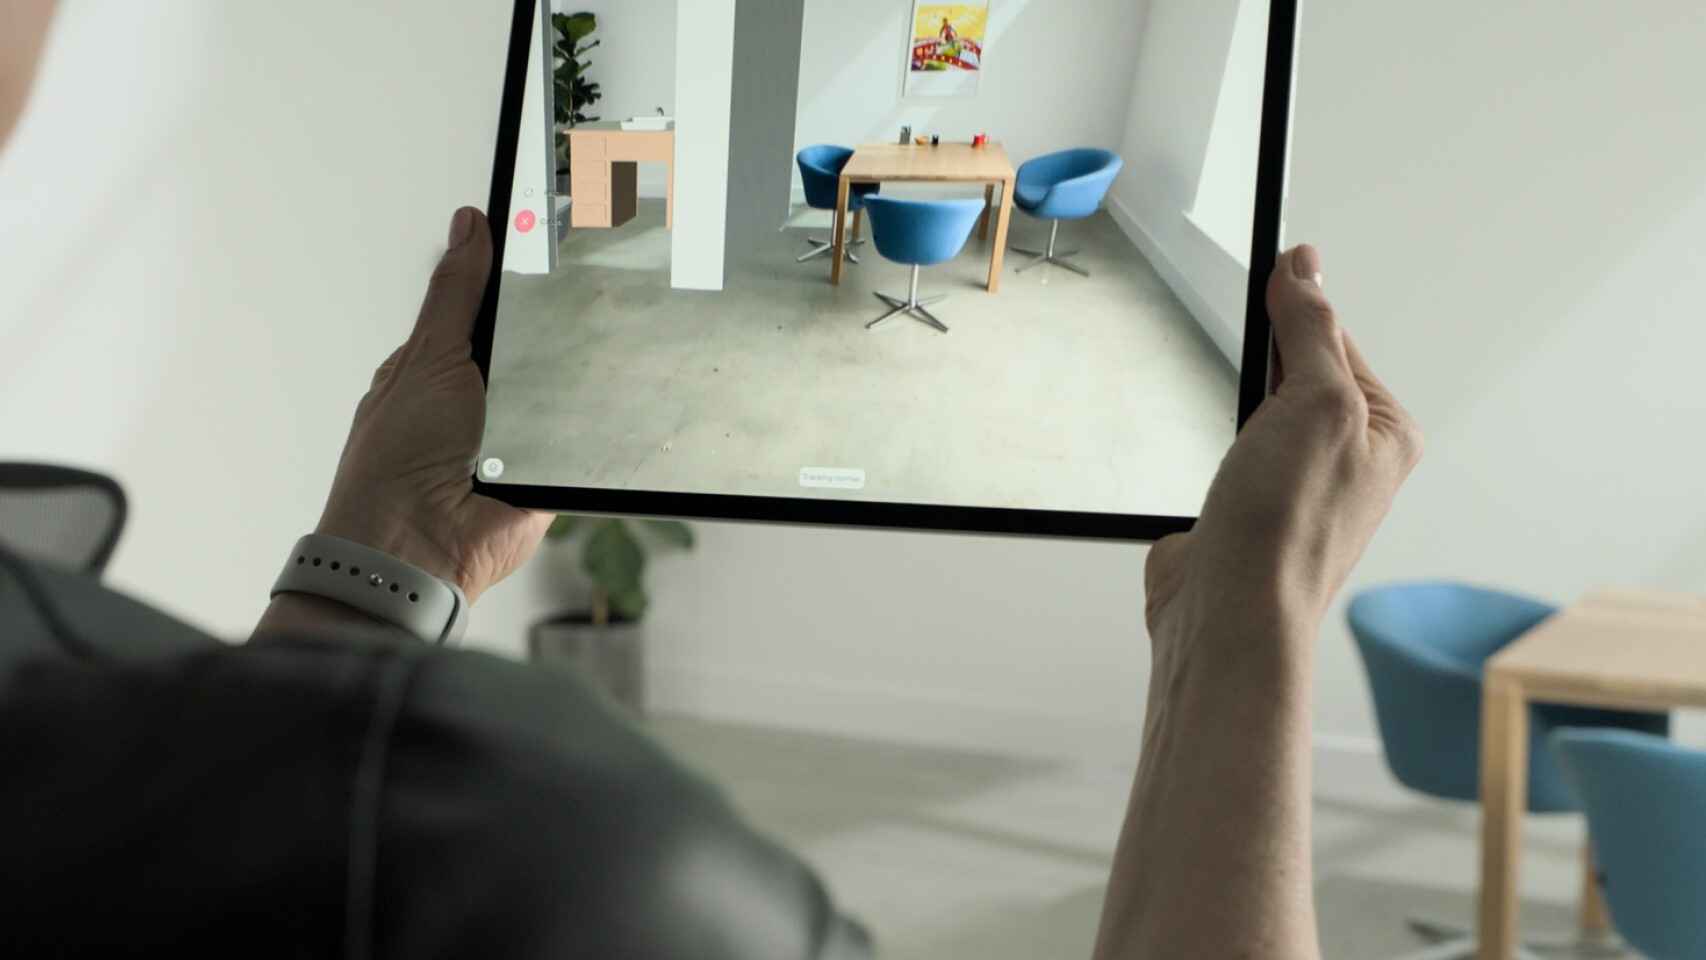 Realidad aumentada usando LiDAR en el iPad Pro